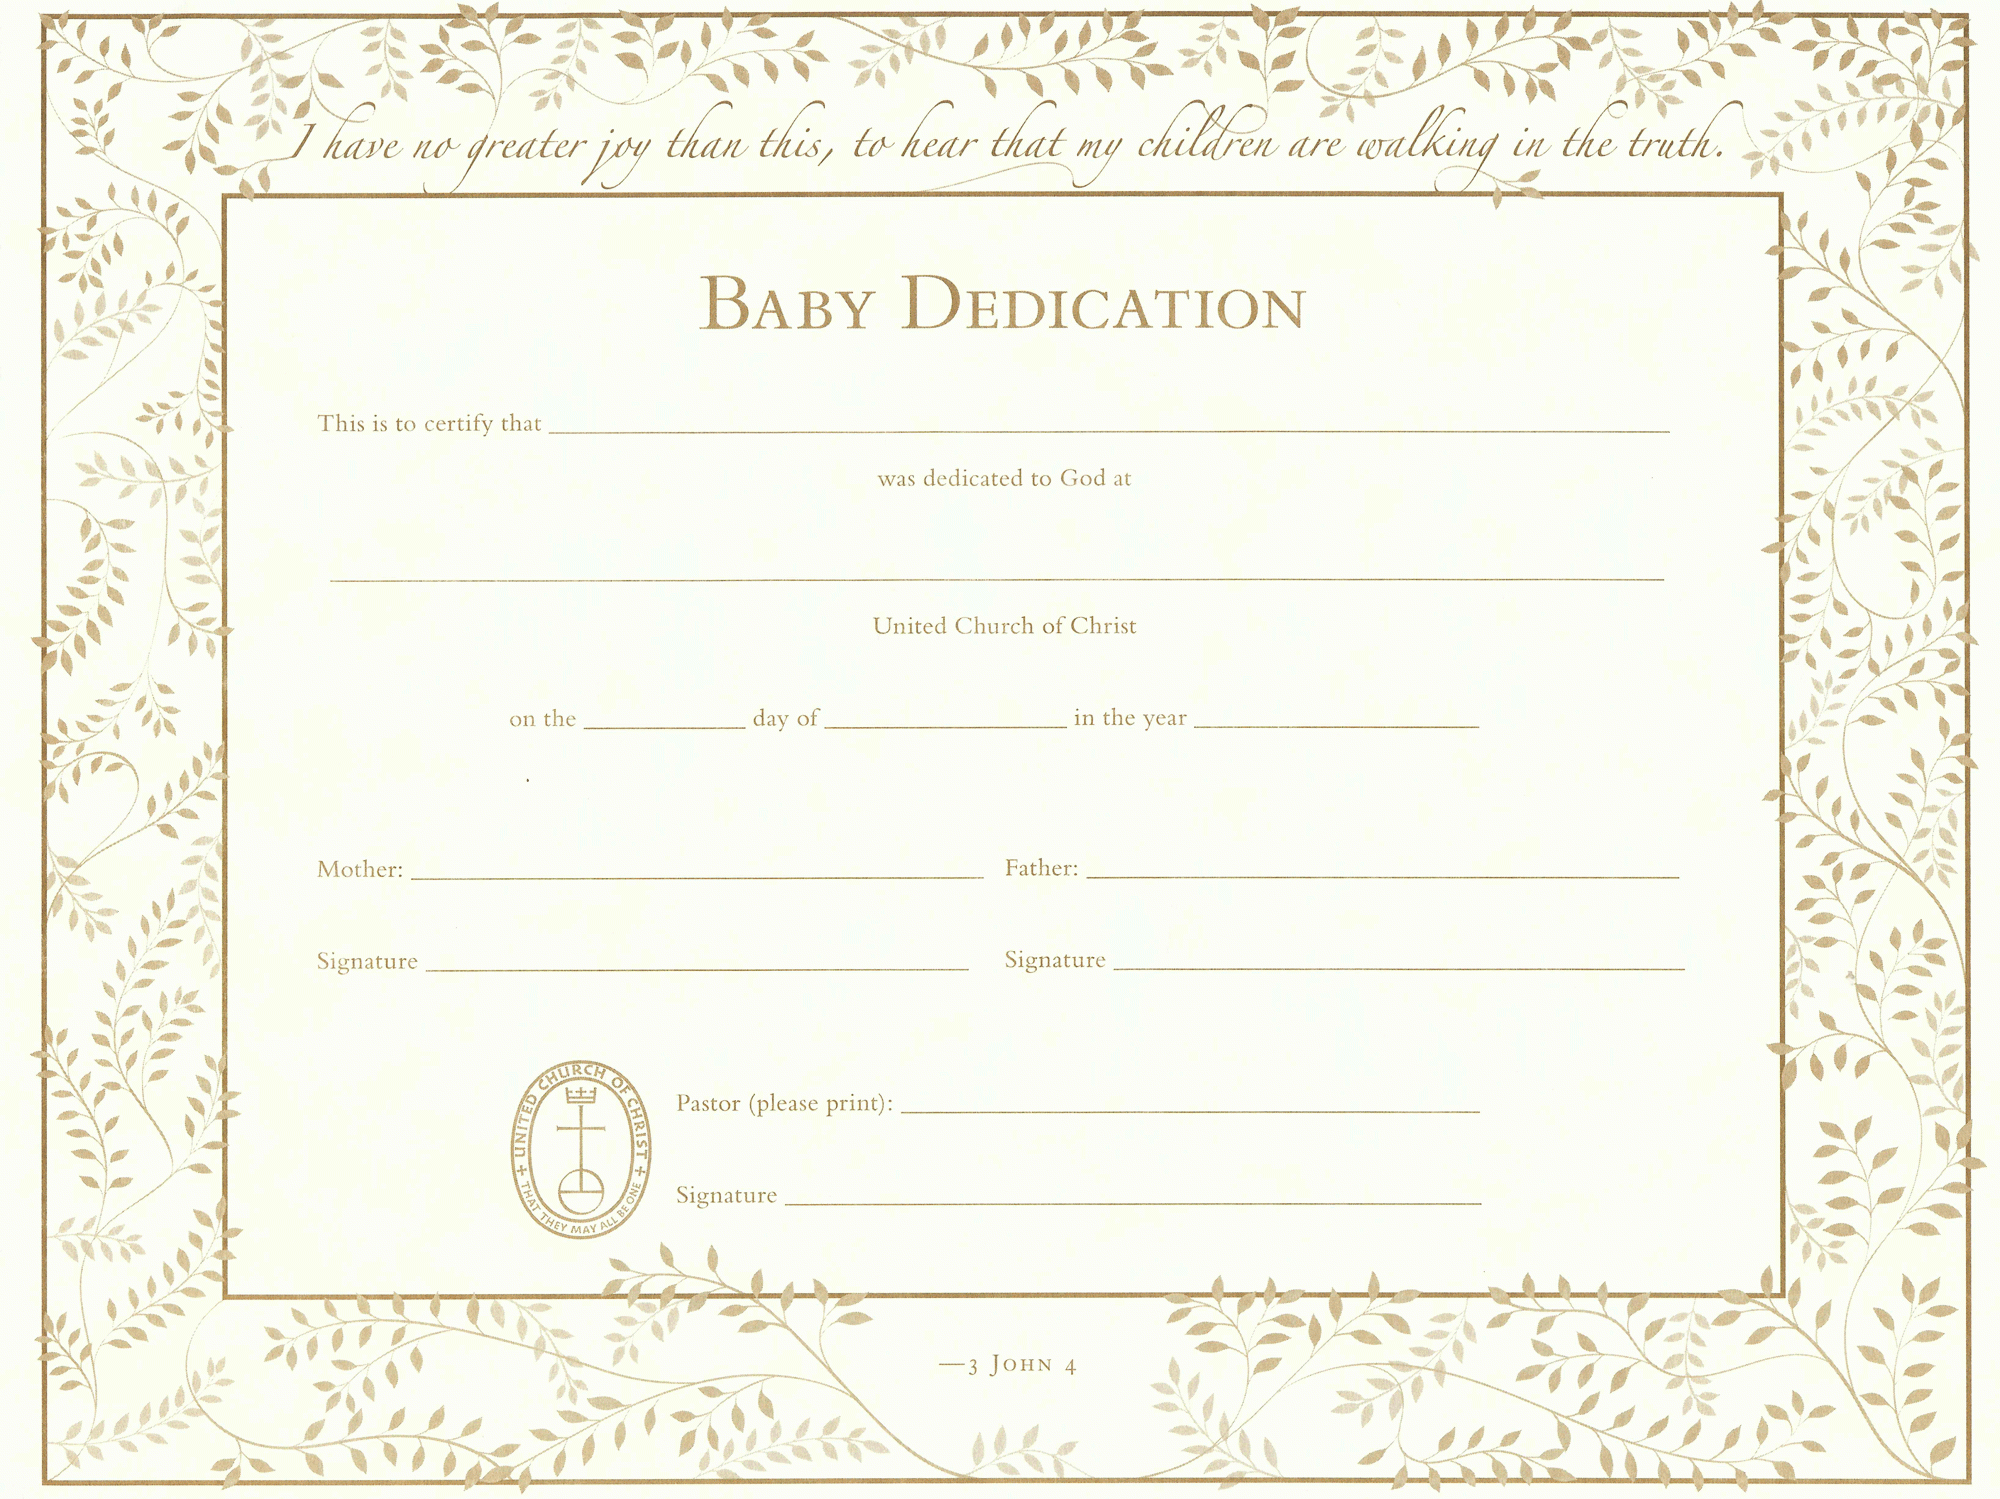 Best Printable Baby Dedication Certificate | Wanda Website Inside Baby Dedication Certificate Template